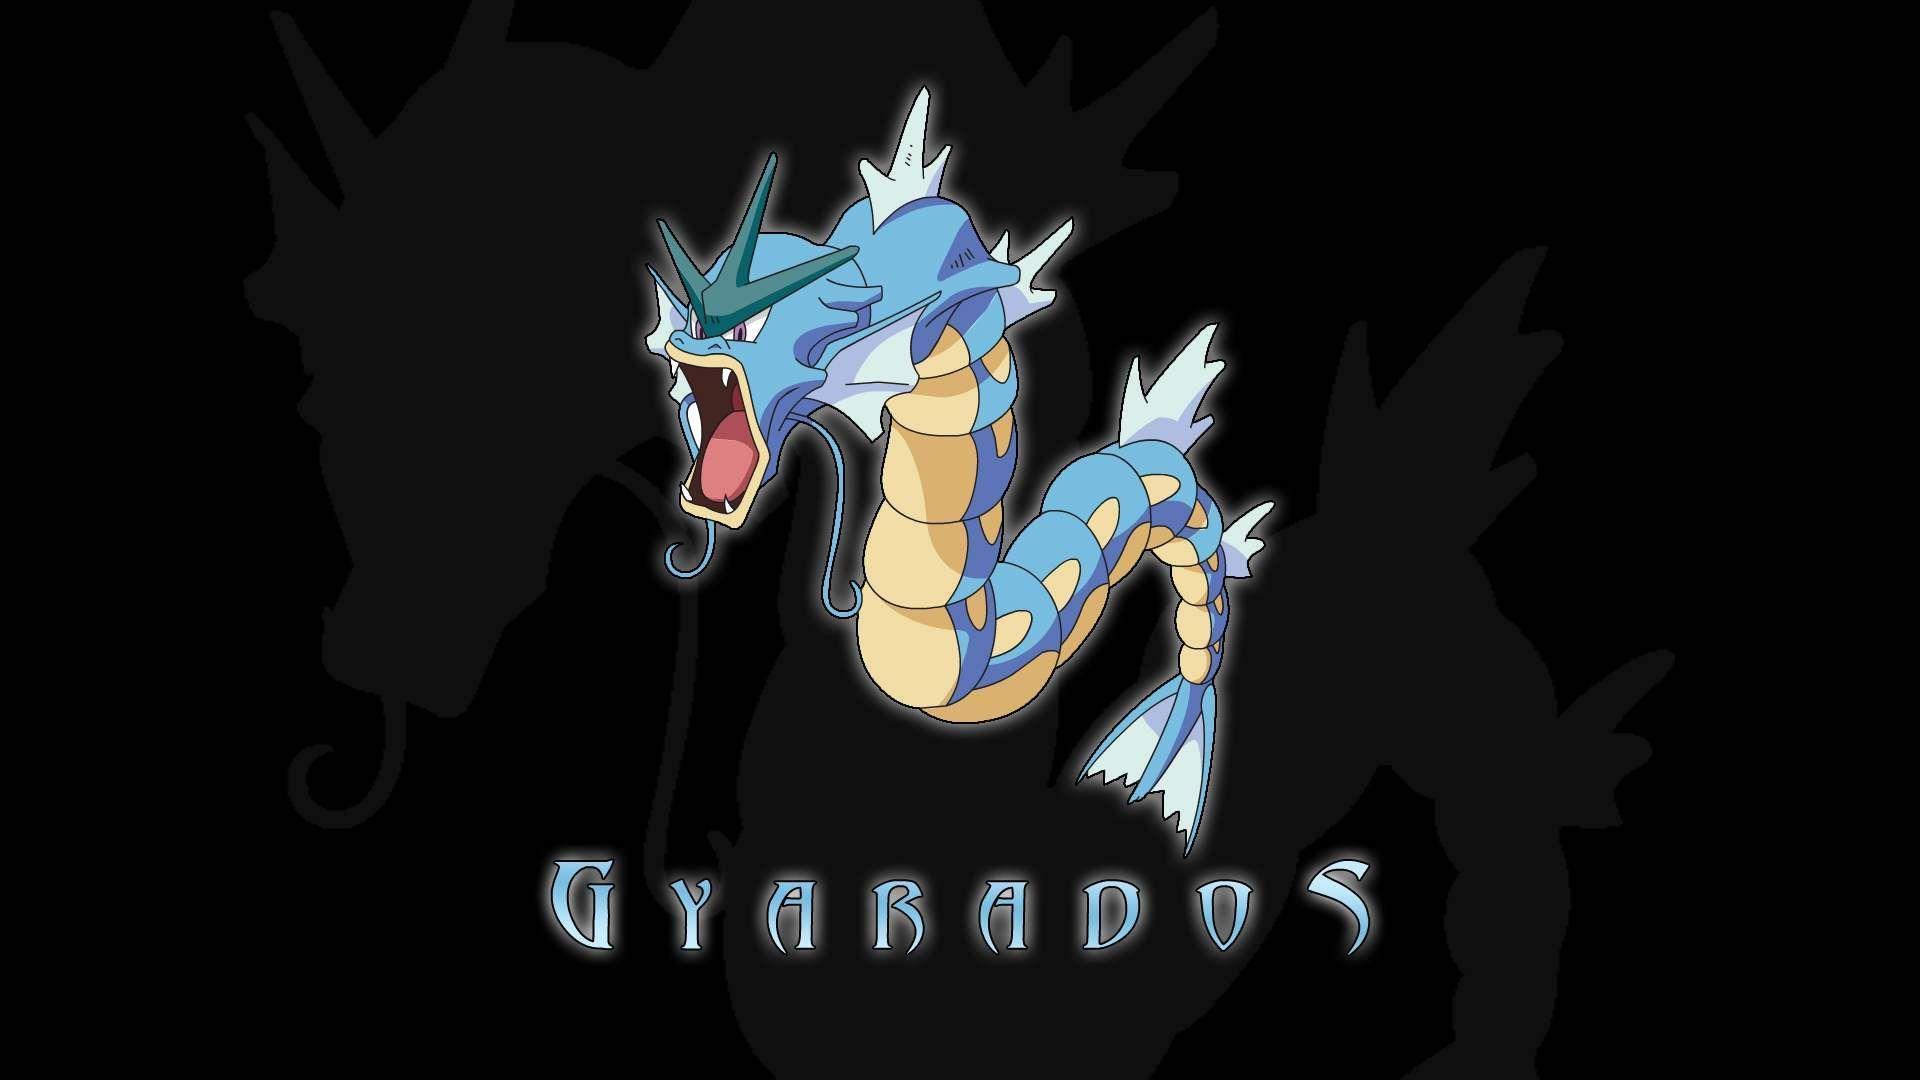 Gyarados Wallpaper - Hd Wallpapers Pokemon Gyarados , HD Wallpaper & Backgrounds